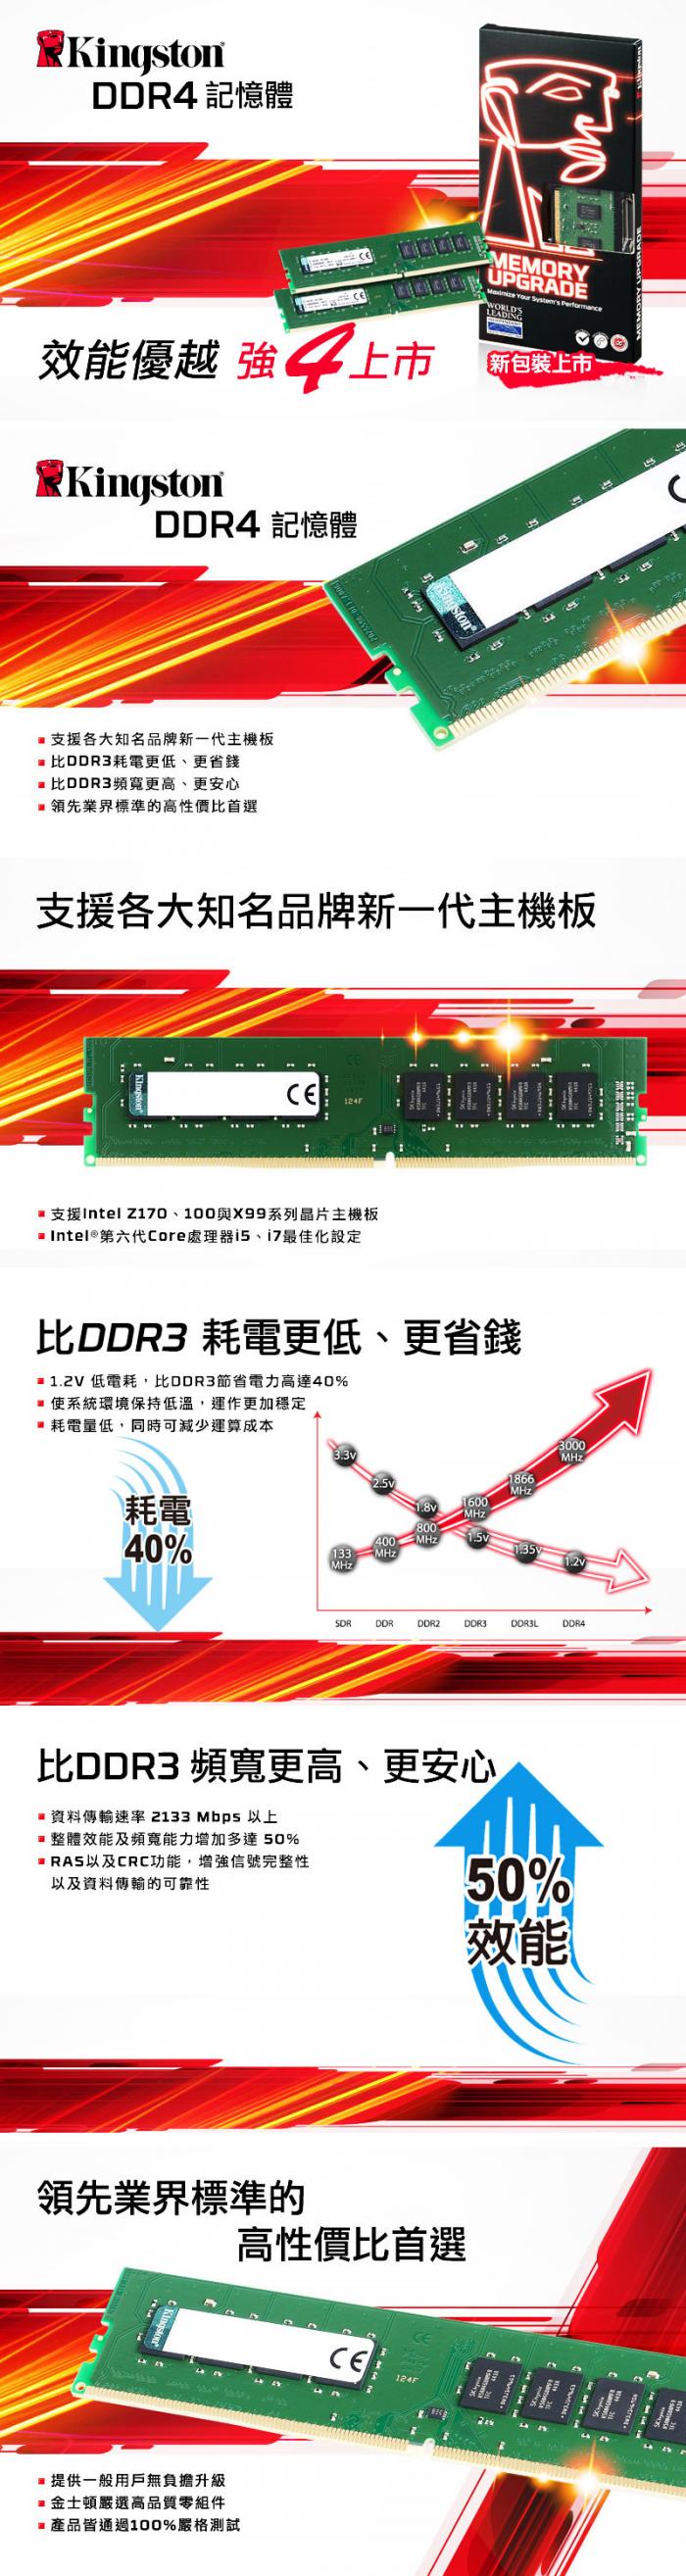 金士頓 4G DDR4 2666